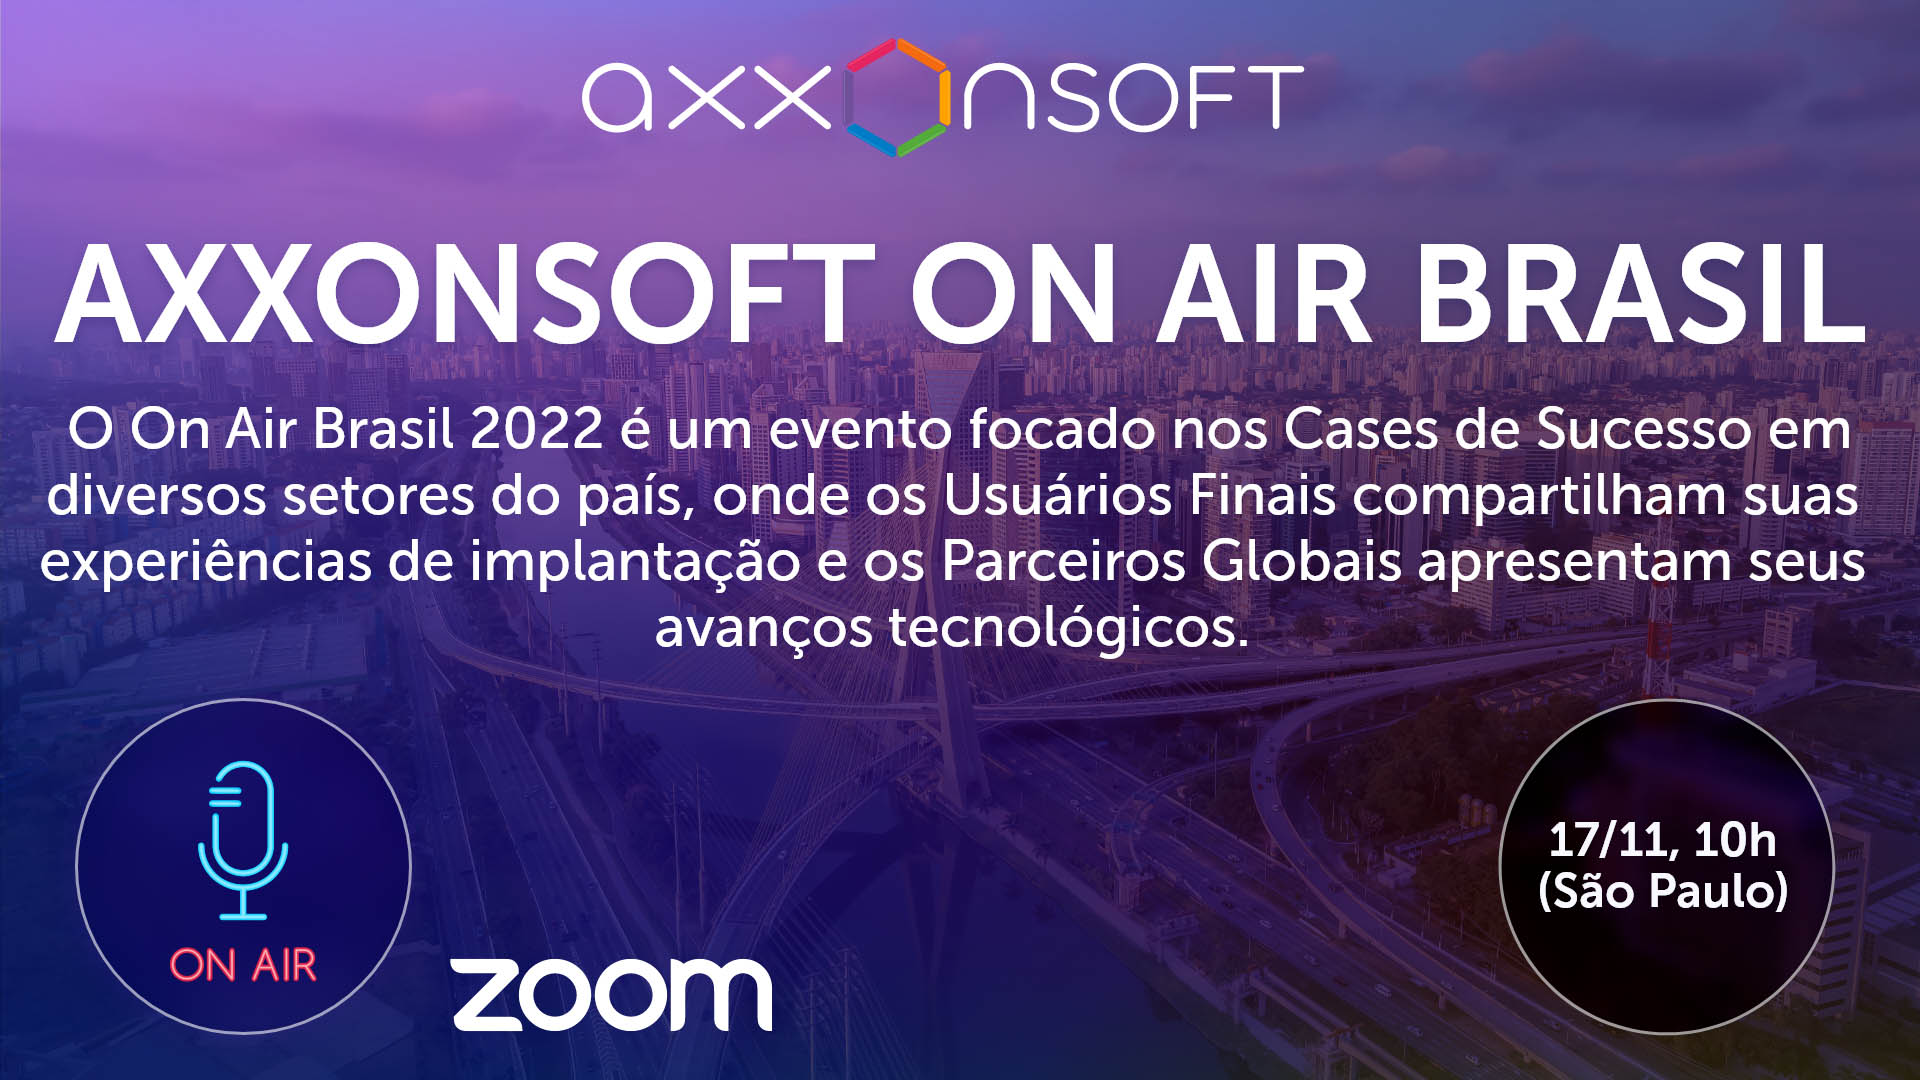 AxxonSoft On Air Brazil